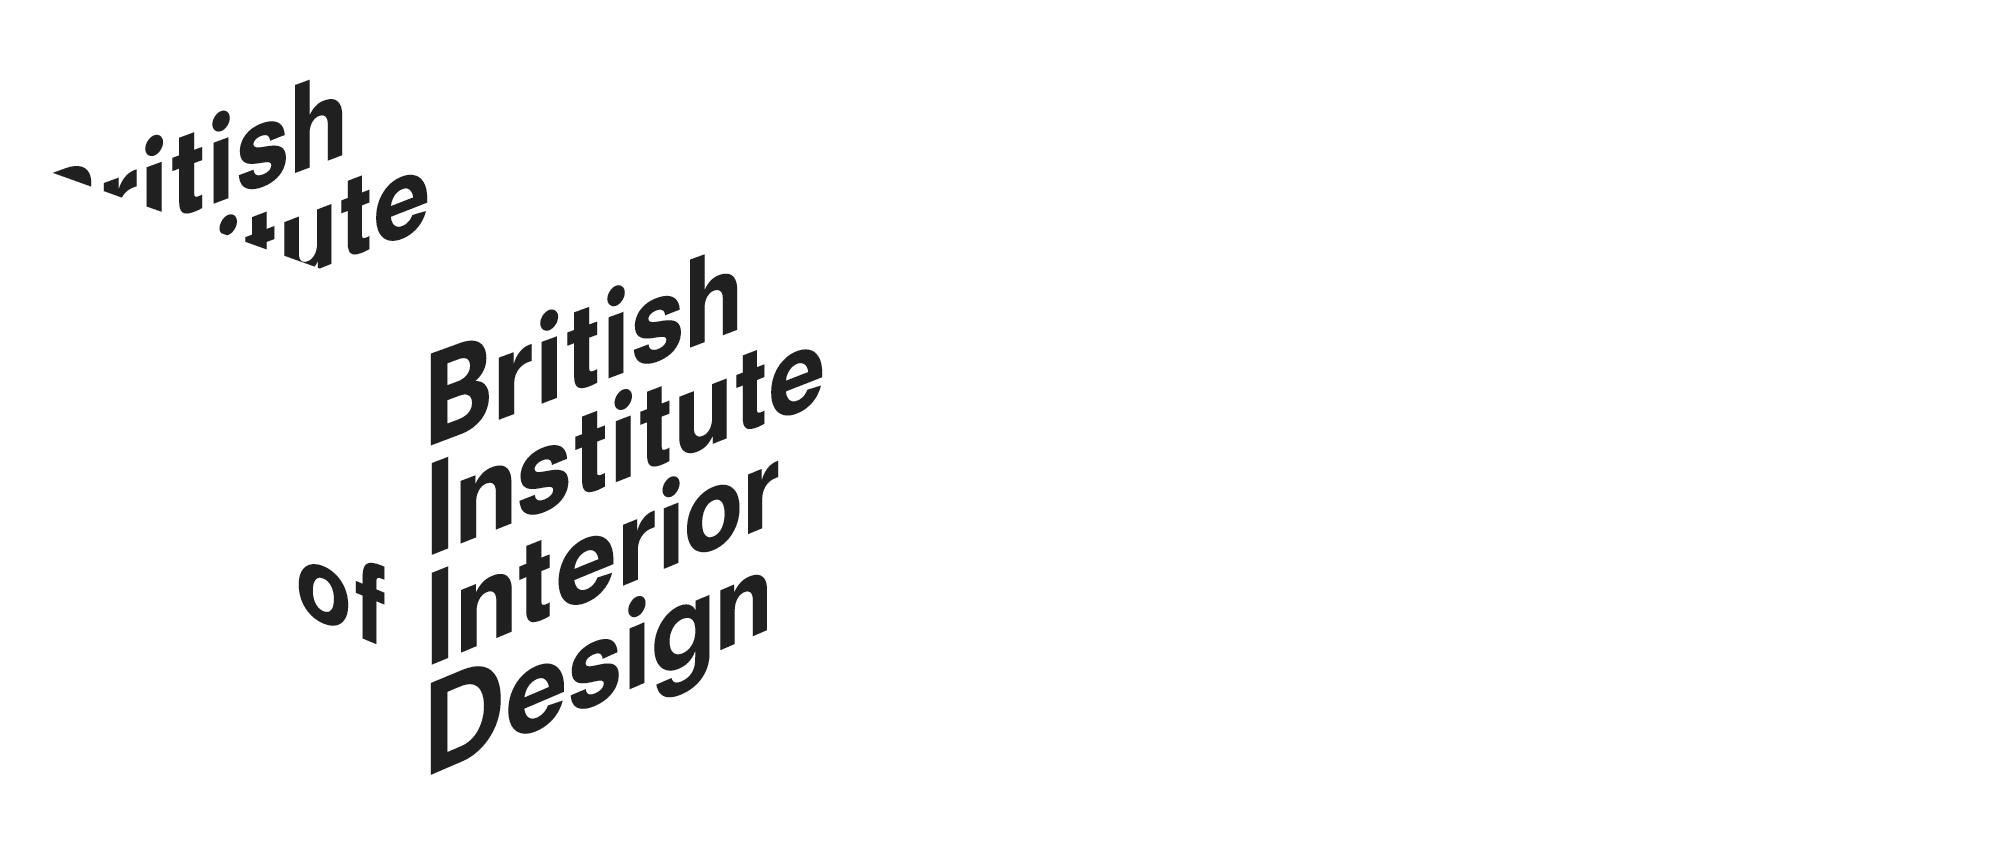 Bristol Institue of Interior Design Partner